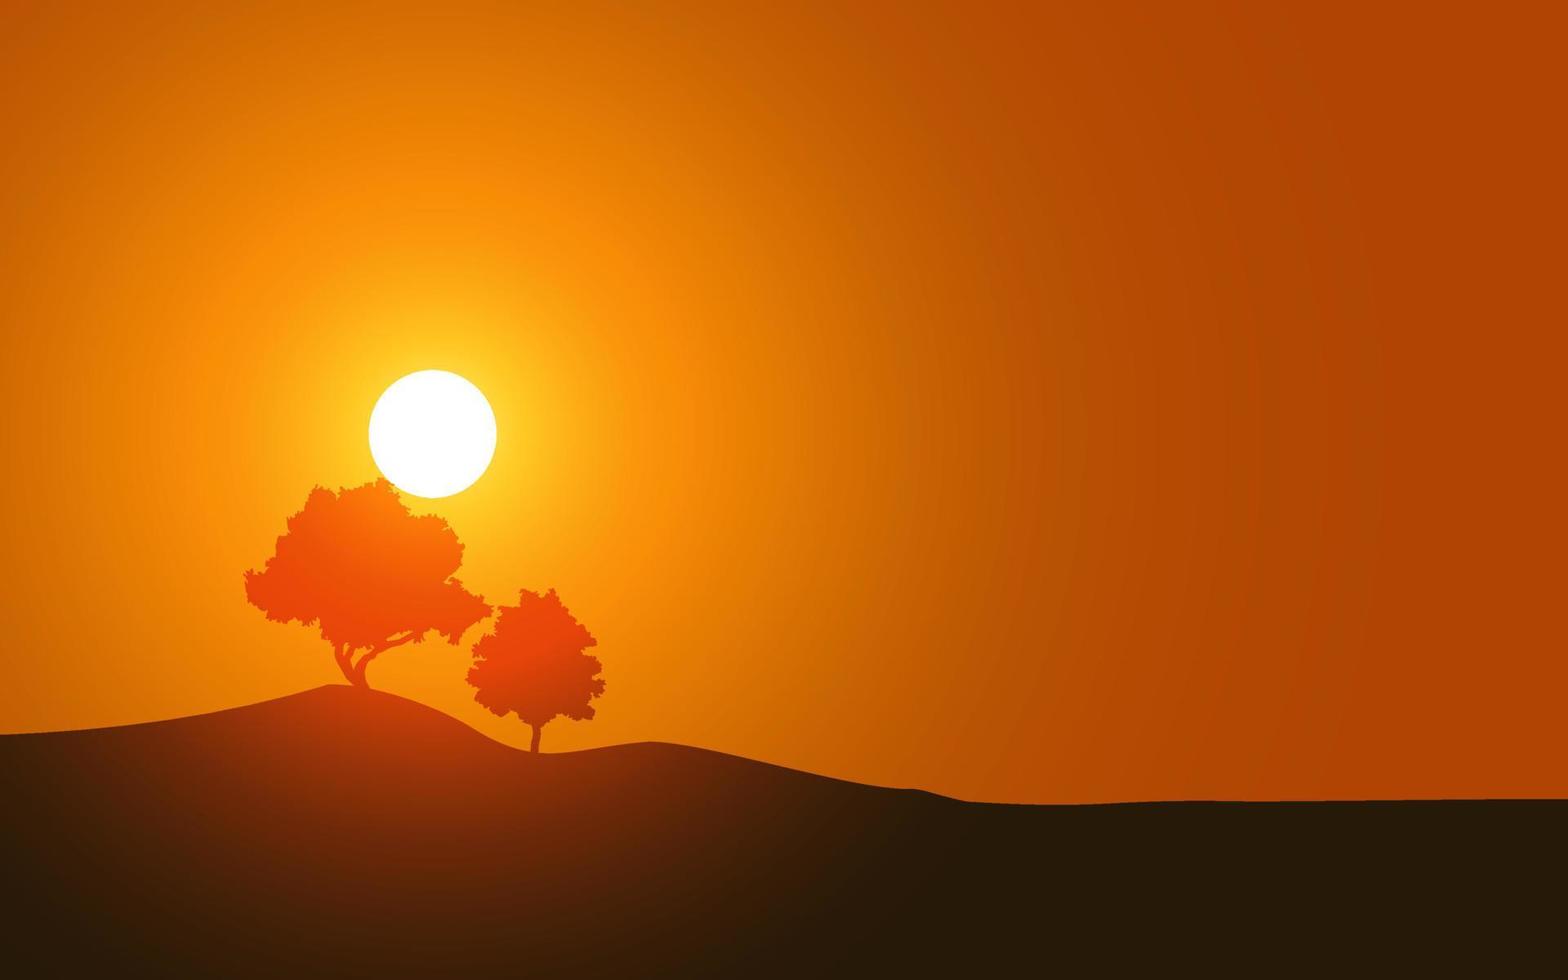 träd siluett på orange himmel solnedgång vektor